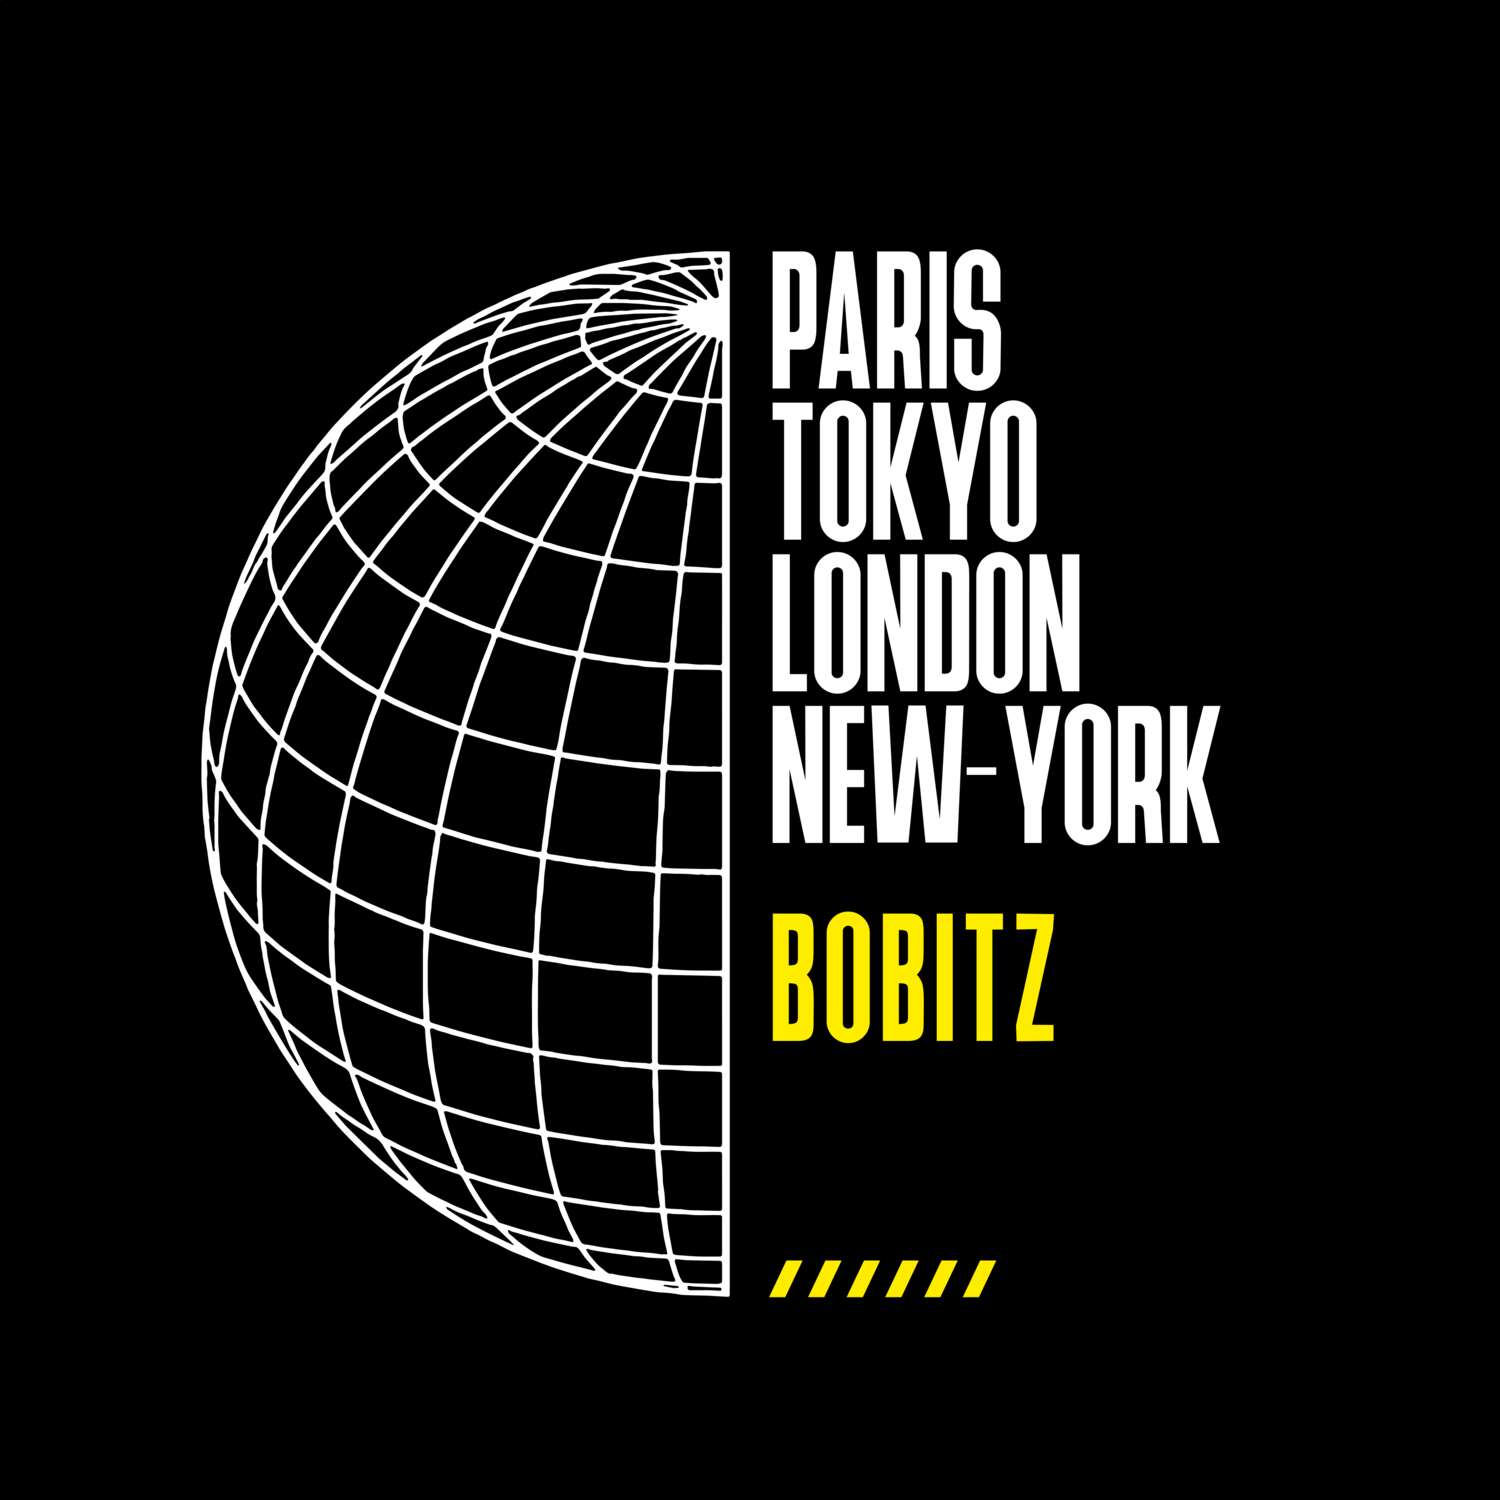 Bobitz T-Shirt »Paris Tokyo London«